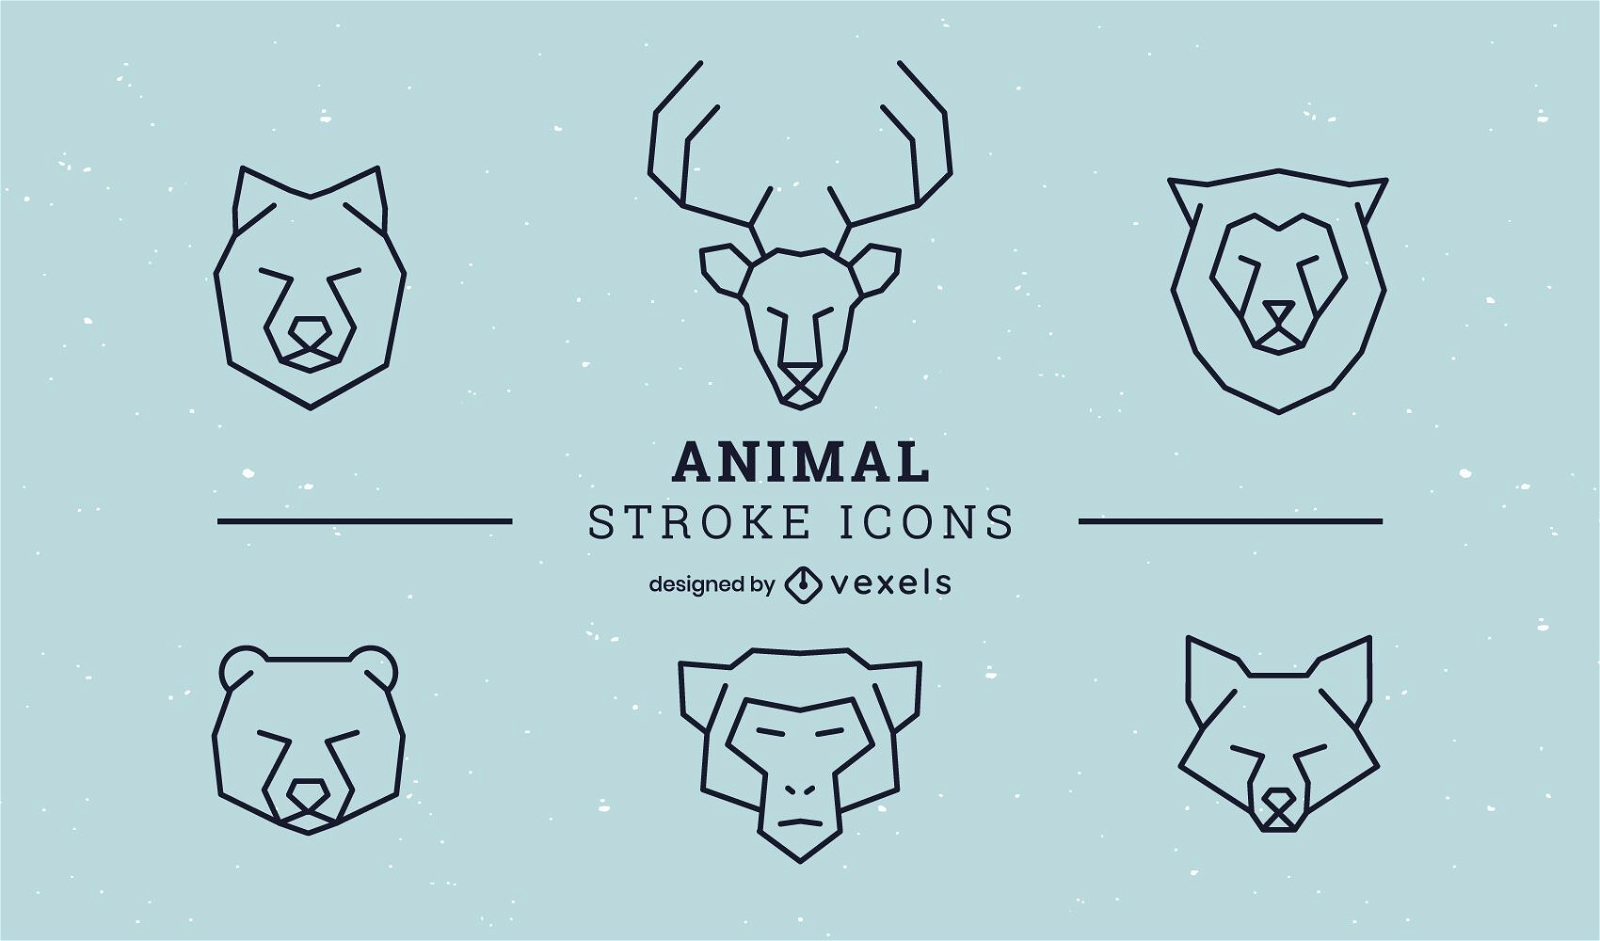 Animal stroke icon set